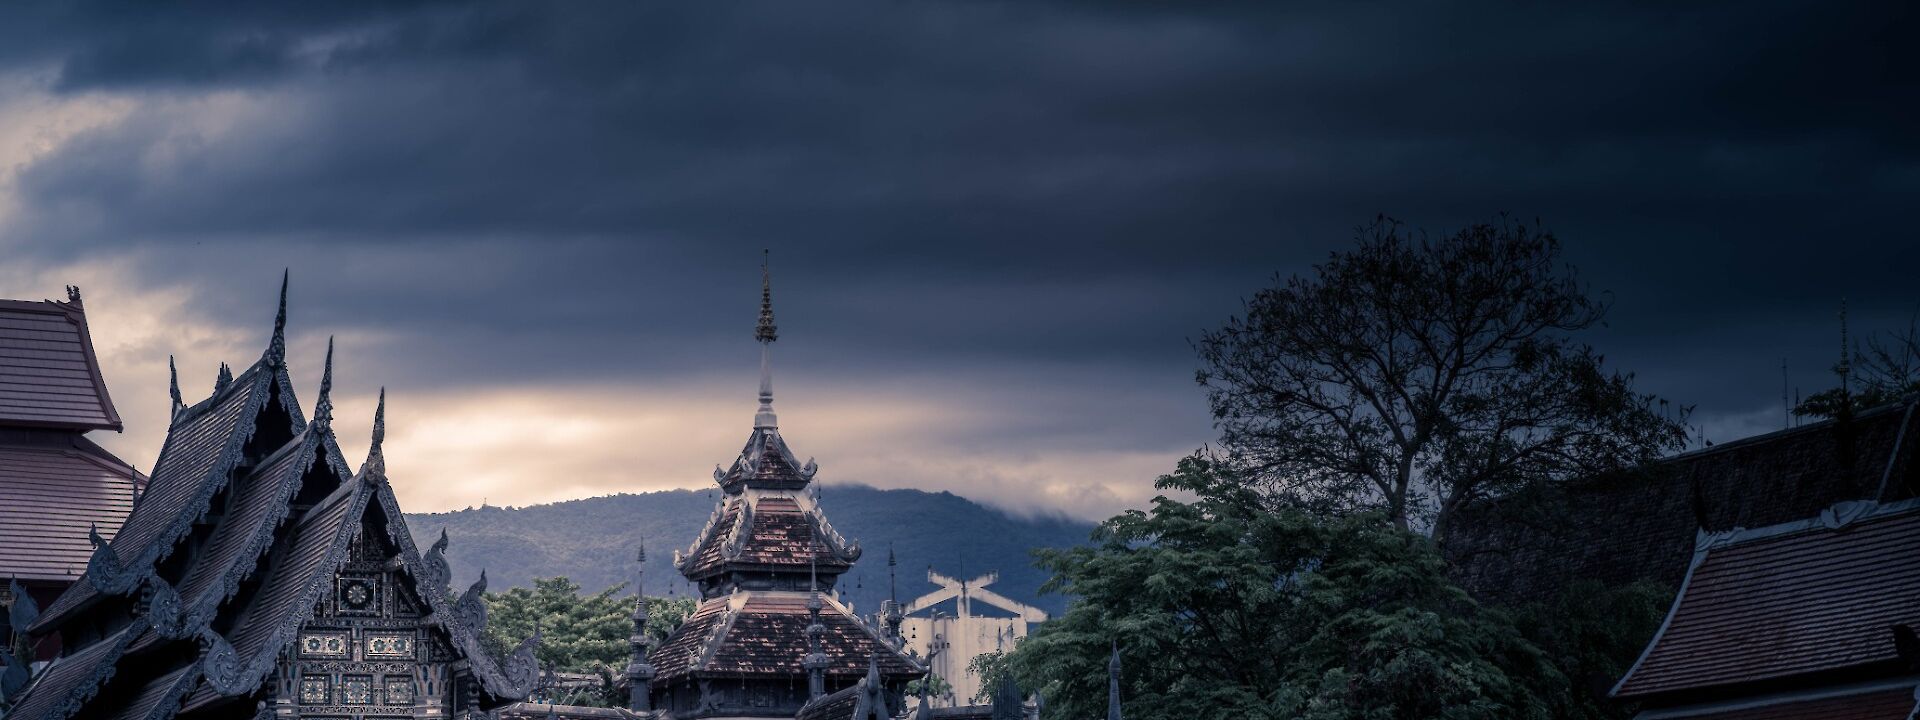 Chiang Mai under dark skies, Chiang Mai, Thailand. Unsplash: matt mu